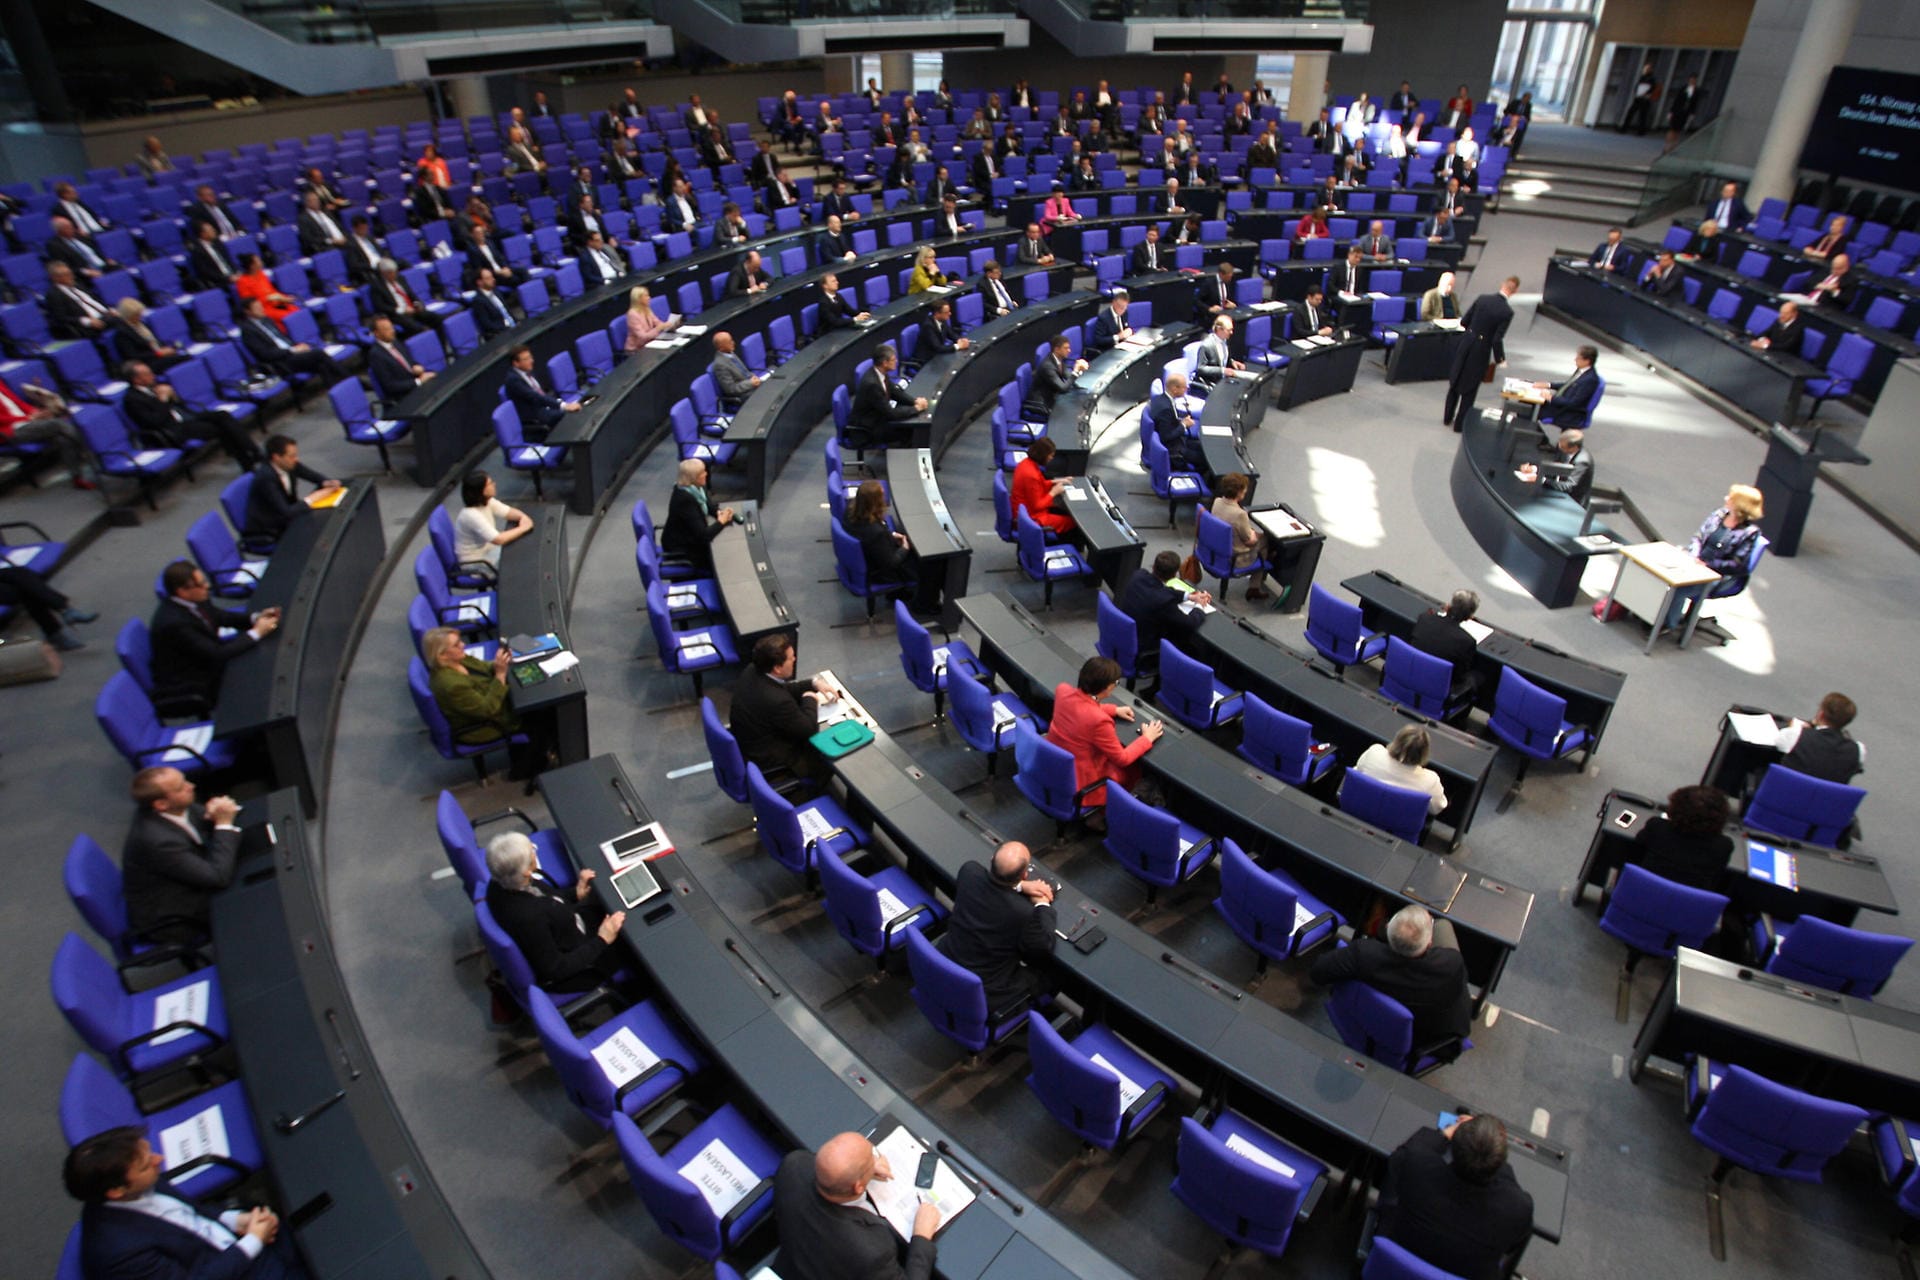 Auf den Stühlen zwischen den Abgeordneten steht "Bitte frei lassen!": Die 154. Sitzung im Deutschen Bundestag fand unter erschwerten Corona-Bedingungen statt.